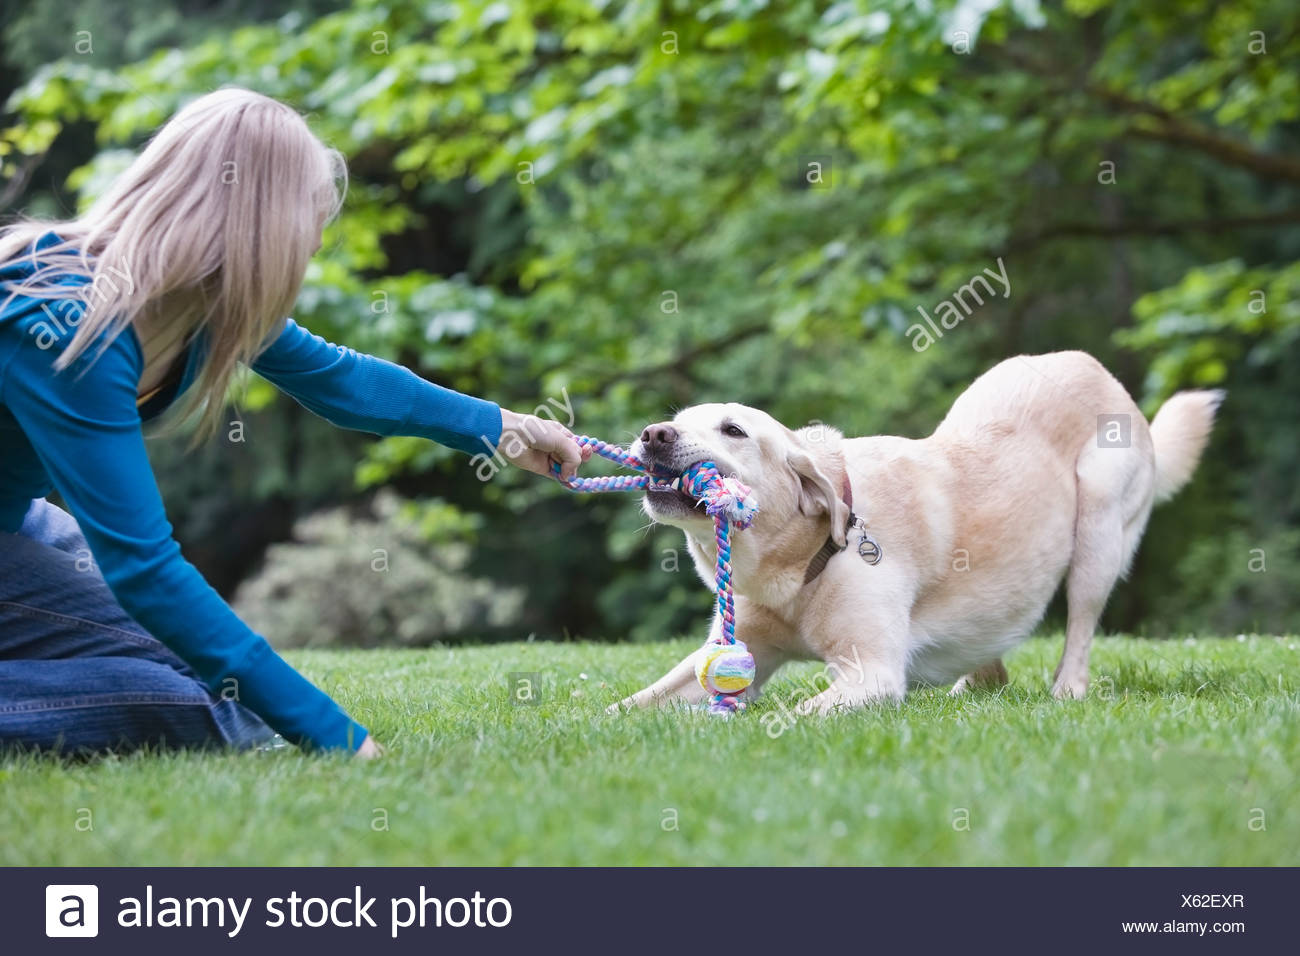 tug of war with dog